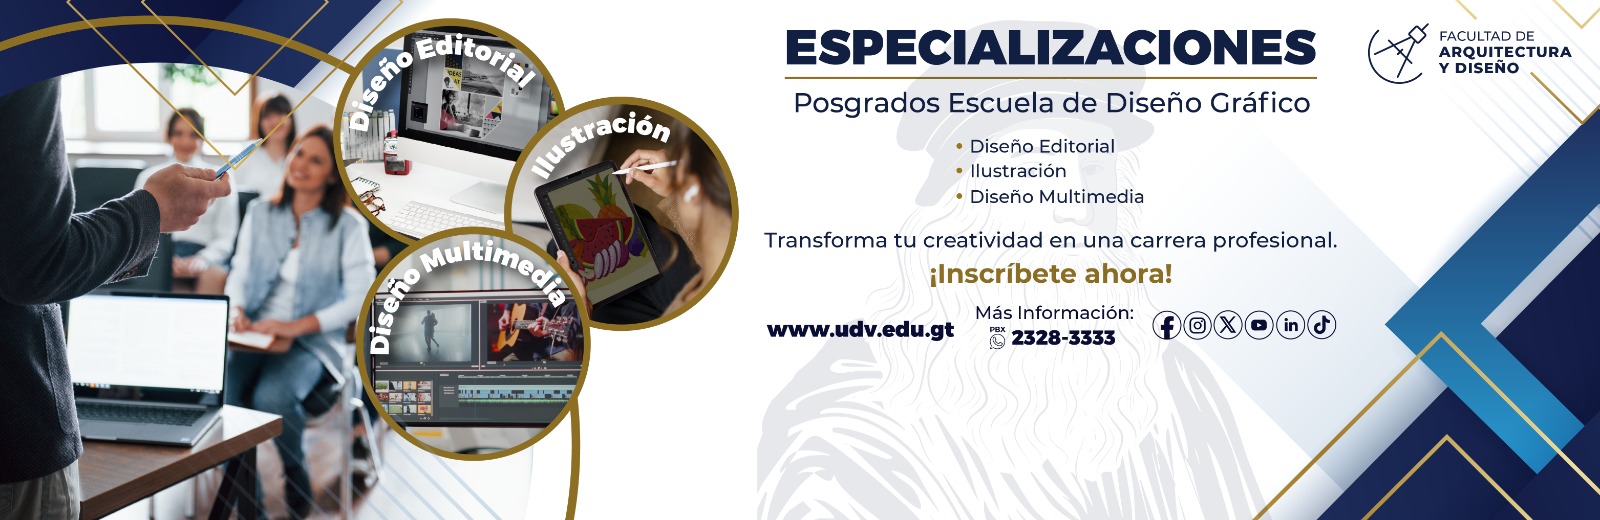  | Universidad da Vinci de Guatemala